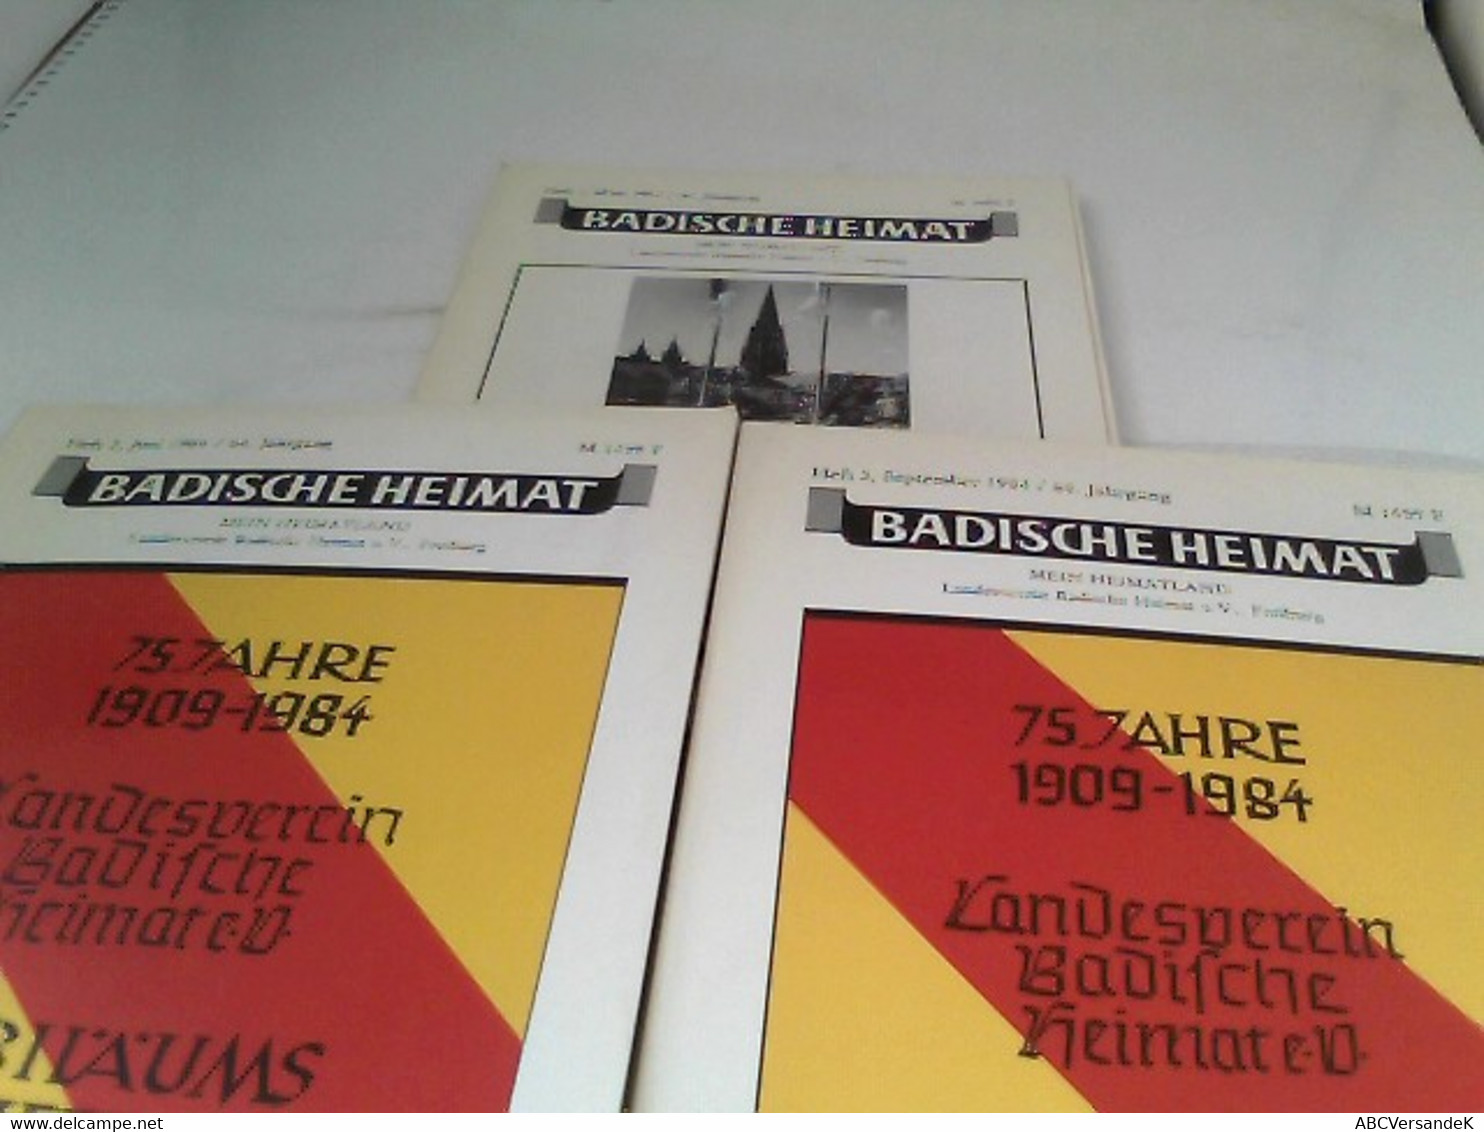 Badische Heimat - Mein Heimatland 64.Jahrgang 1984 Heft 1-3, Heft 4 Fehlt - Deutschland Gesamt